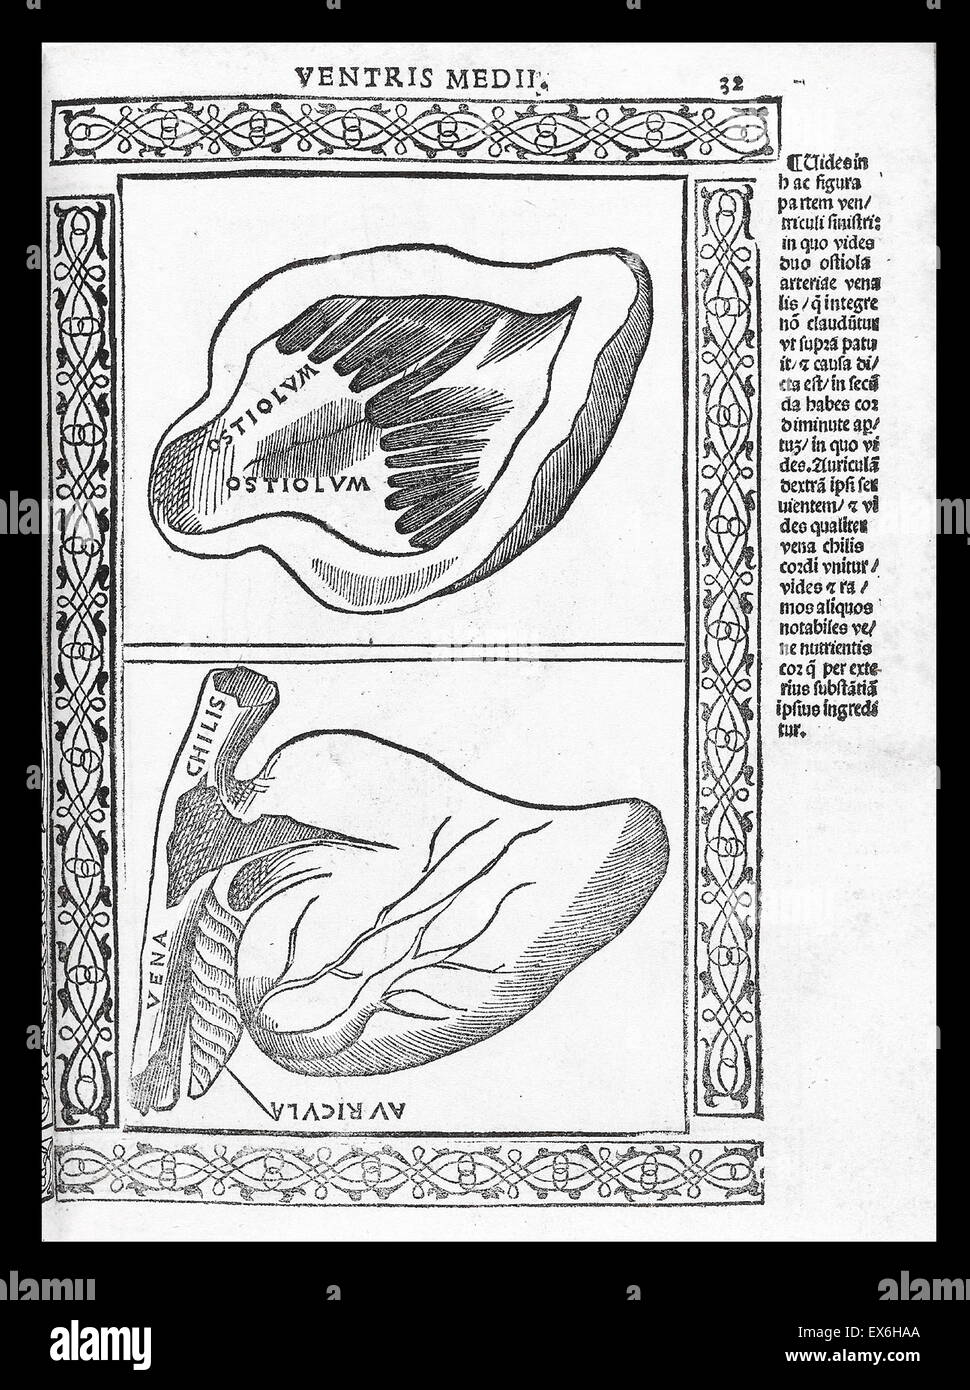 Illustrazione anatomica da 'Isagogae breues, perlucidae ac uberrimae, in anatomiam humani corporis un communi medicorum academia usitatam' di Jacopo Berengario da Carpi, Bologna 1523. Foto Stock